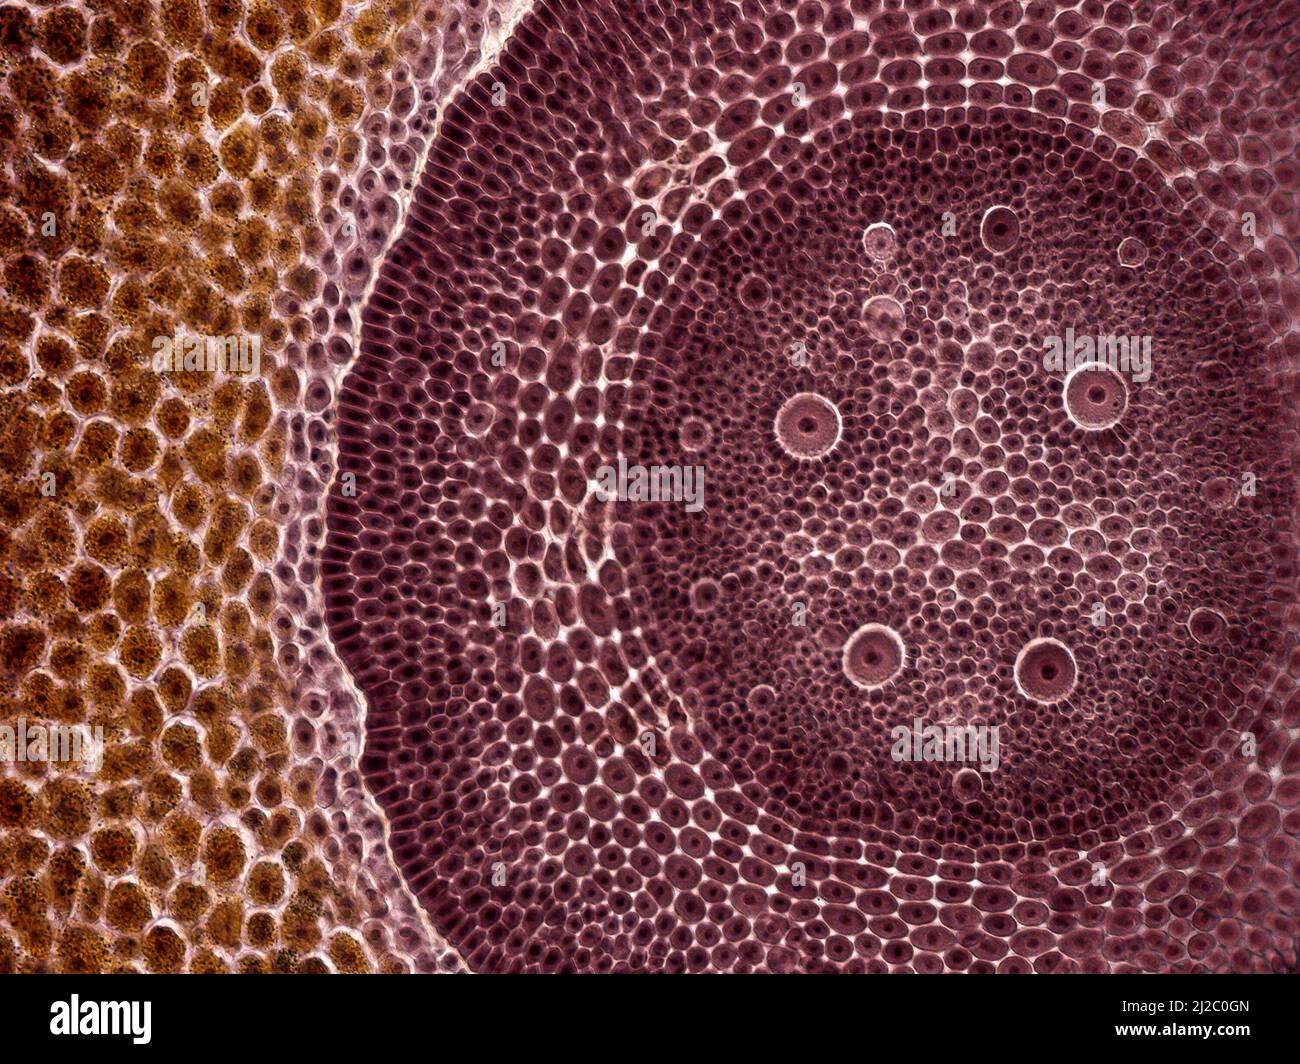 Grain de maïs. Une photo intéressante prise avec un microscope. Coupe transversale à travers le grain de maïs (Zea mays). Banque D'Images